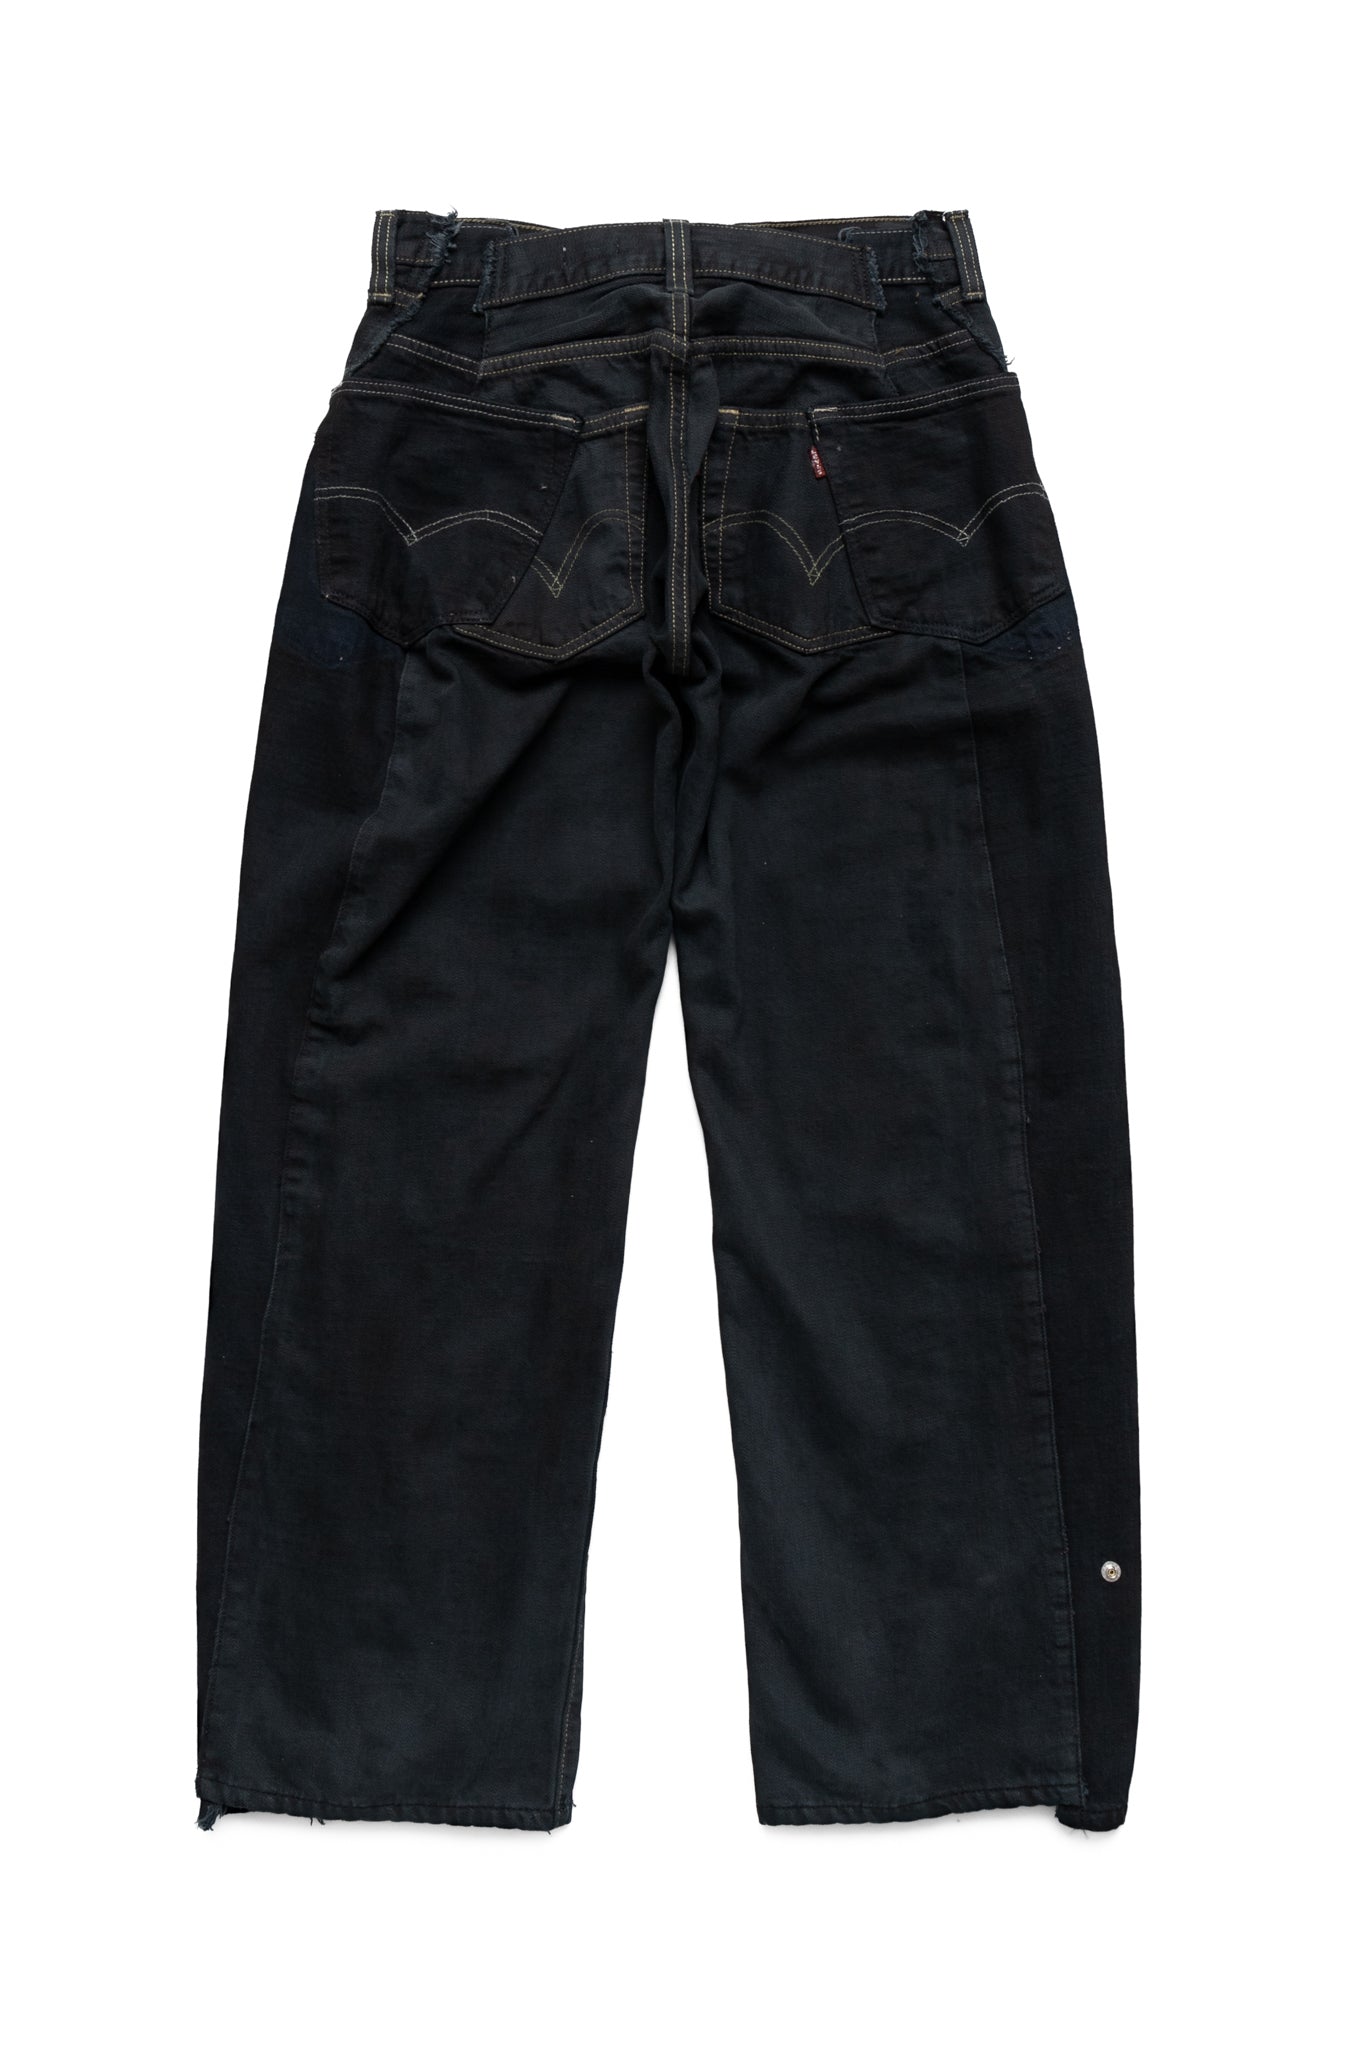 Zip Baggy Jeans Black - XS (1)